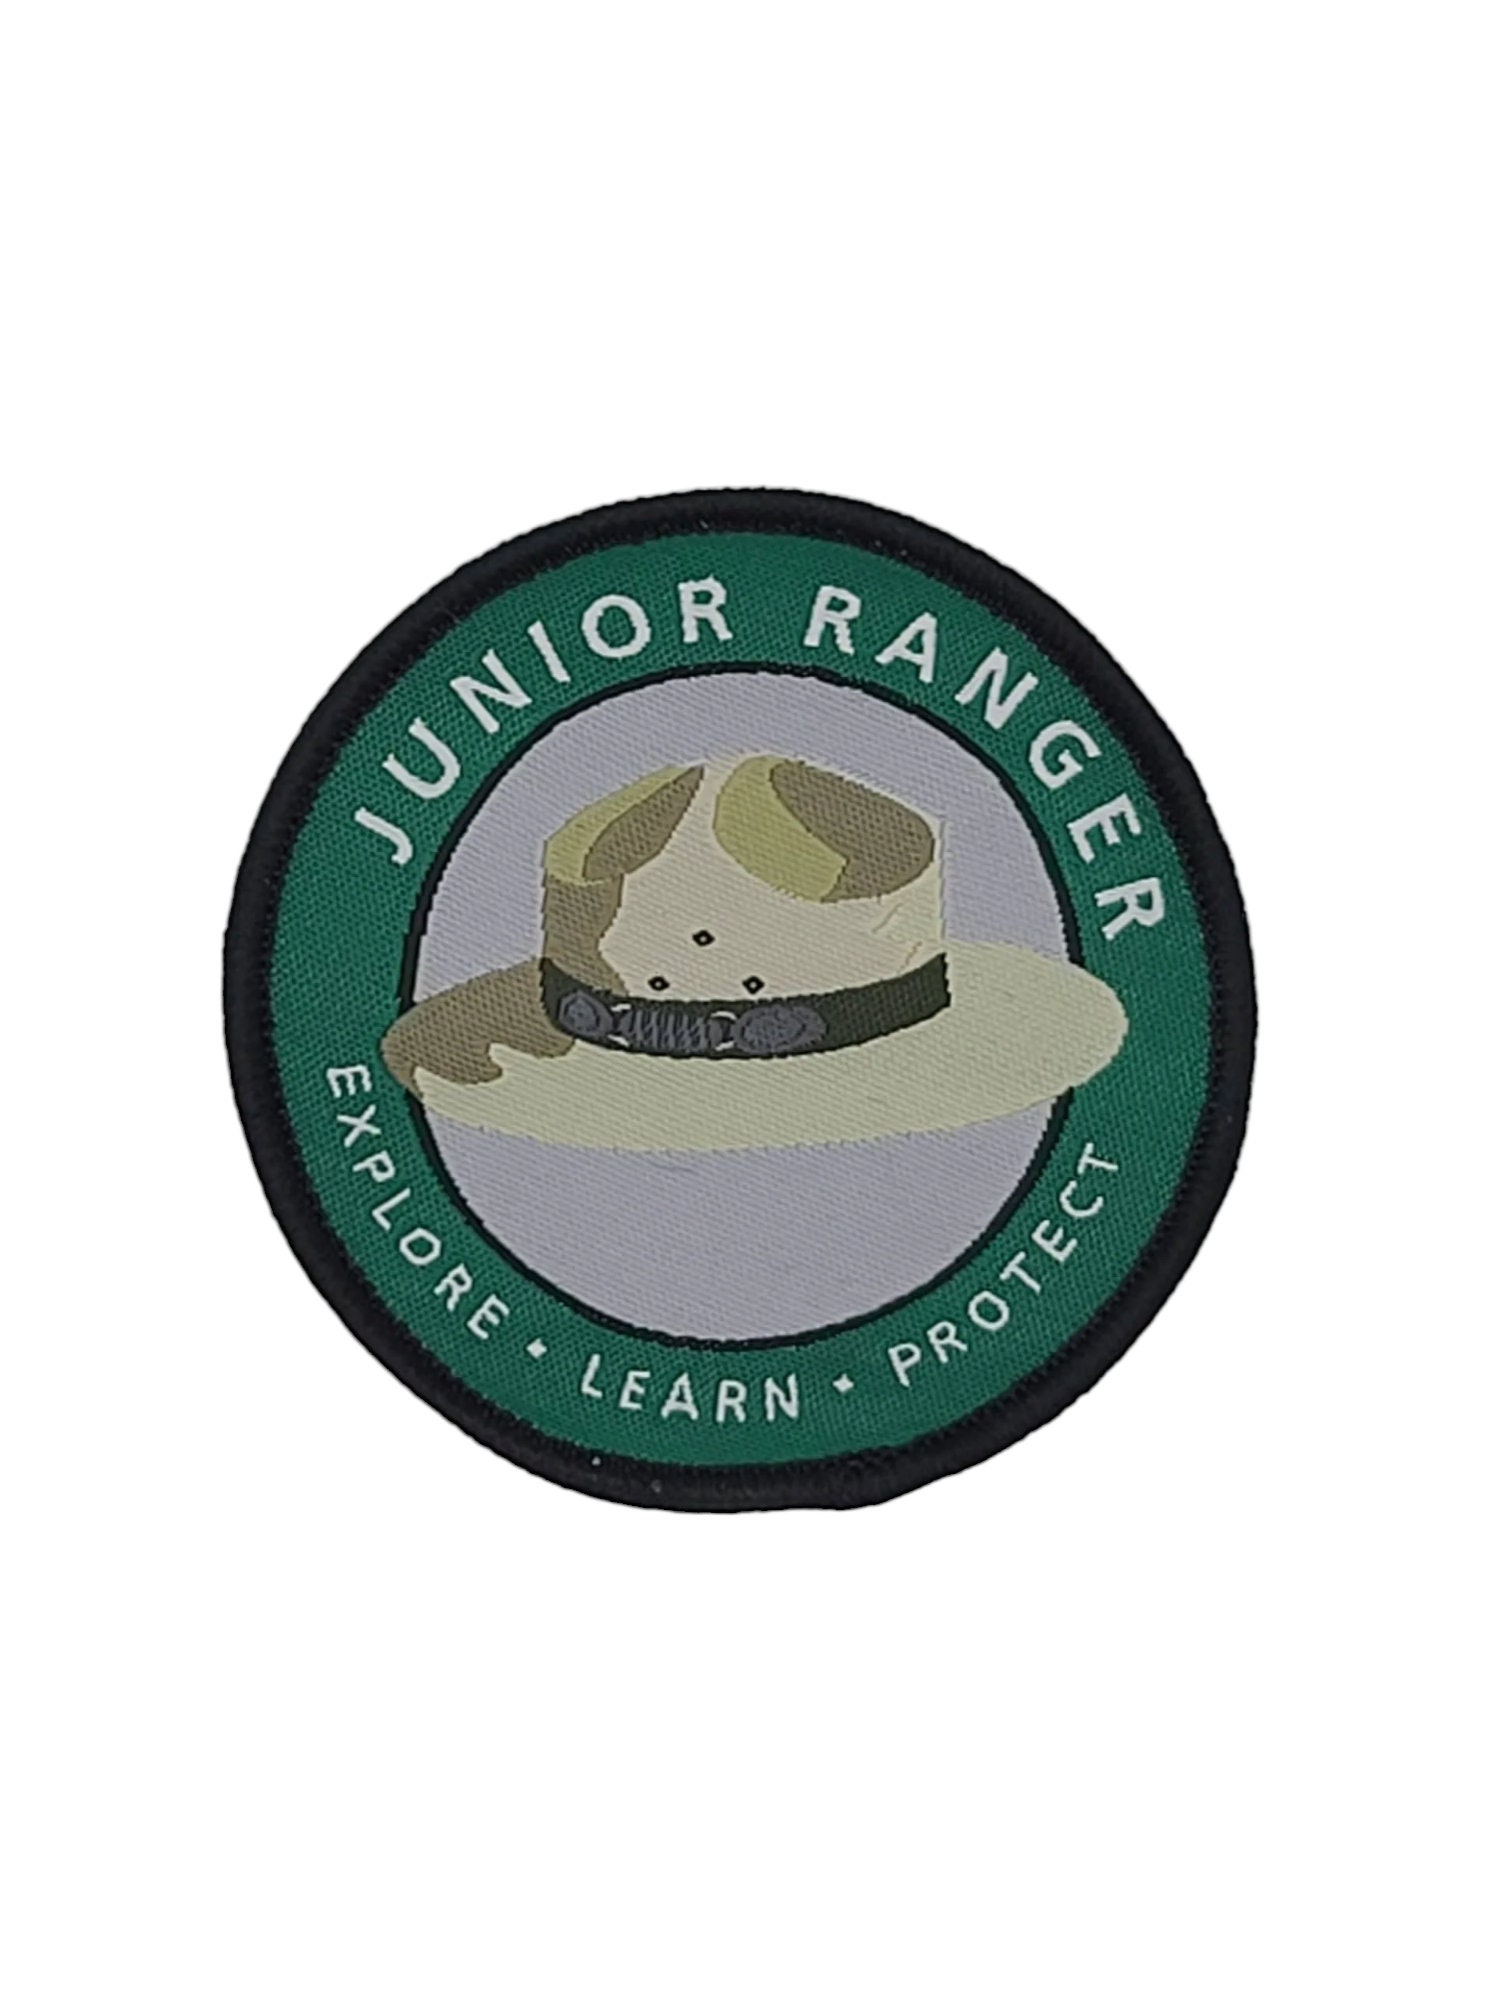 Junior Ranger Badge -  Canada